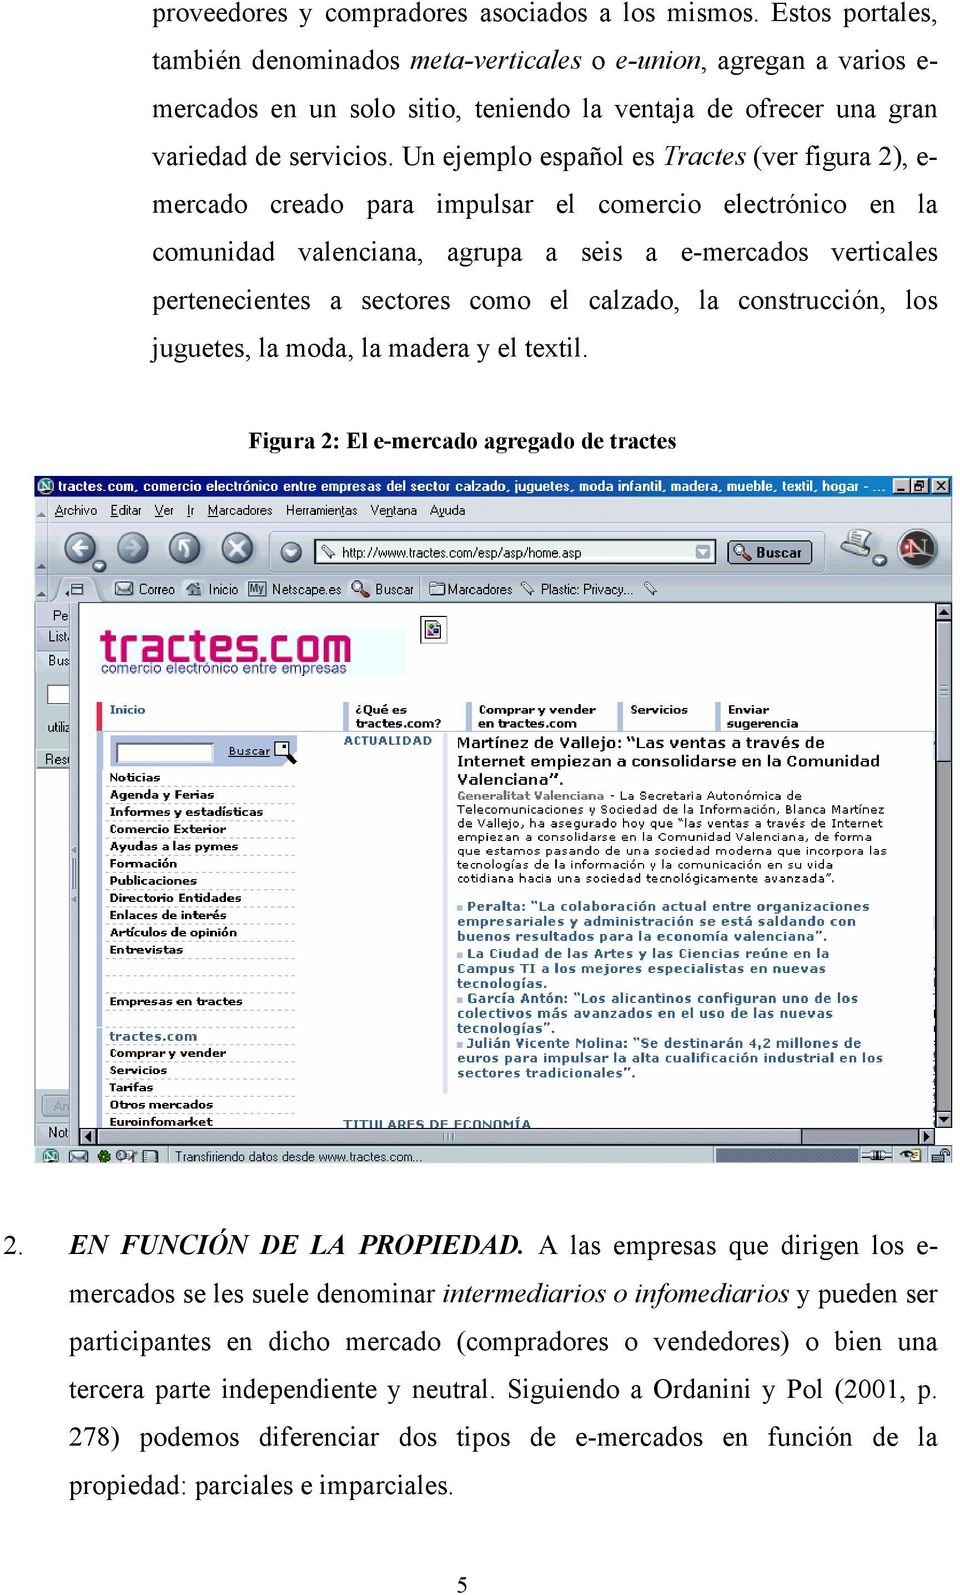 Un ejemplo español es Tractes (ver figura 2), e- mercado creado para impulsar el comercio electrónico en la comunidad valenciana, agrupa a seis a e-mercados verticales pertenecientes a sectores como